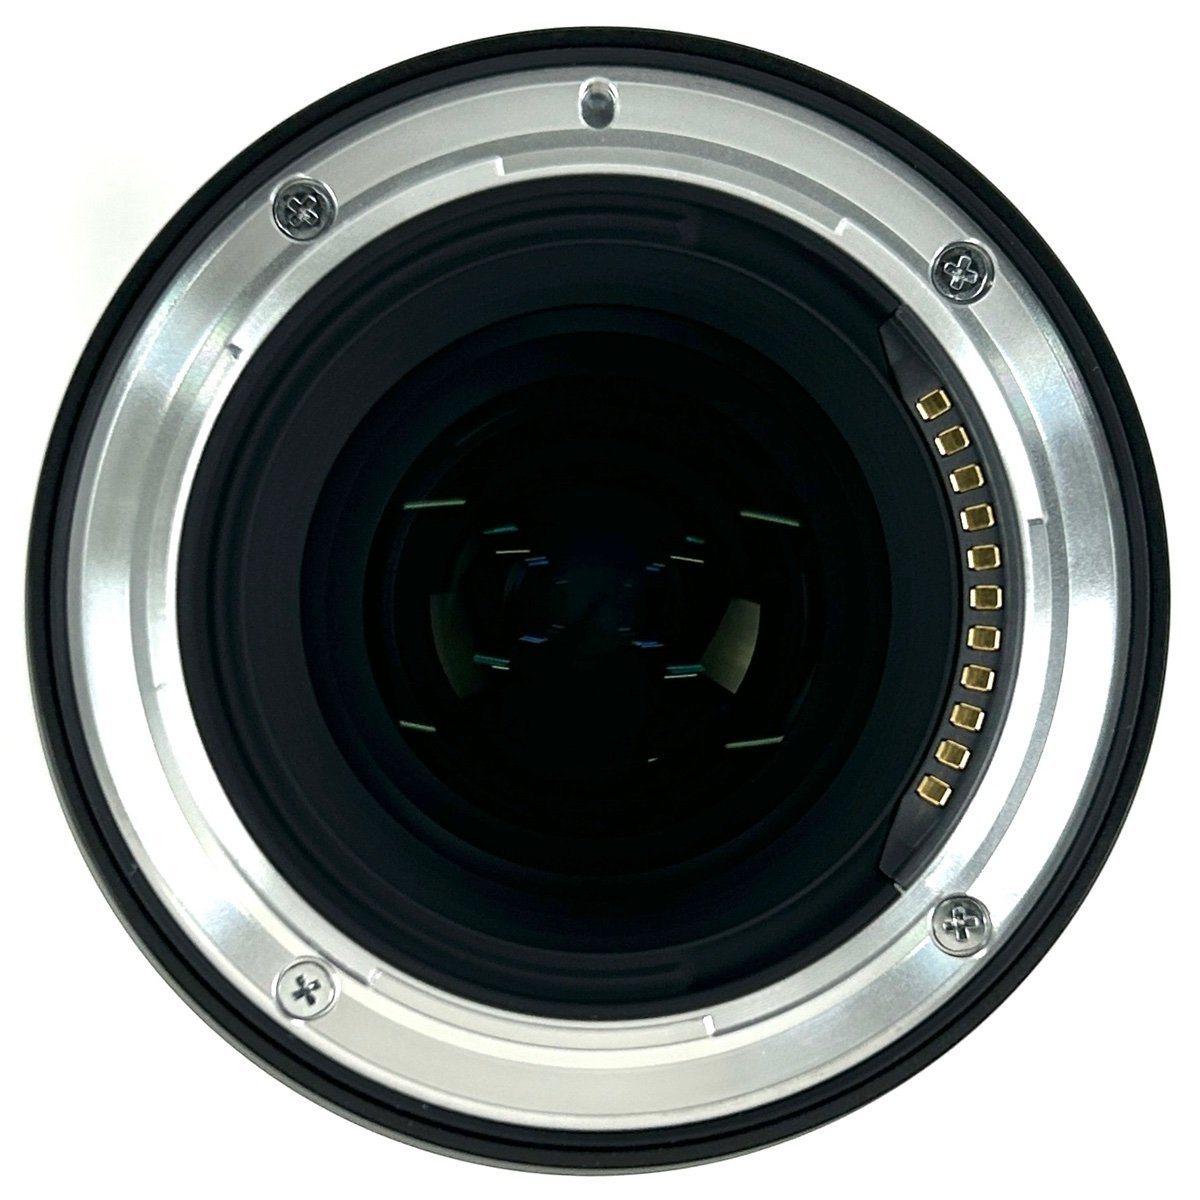 ニコン Nikon Z6 + NIKKOR Z MC 105mm F2.8 VR S マクロ デジタル ミラーレス 一眼カメラ 【中古】_バイセル 31052_7